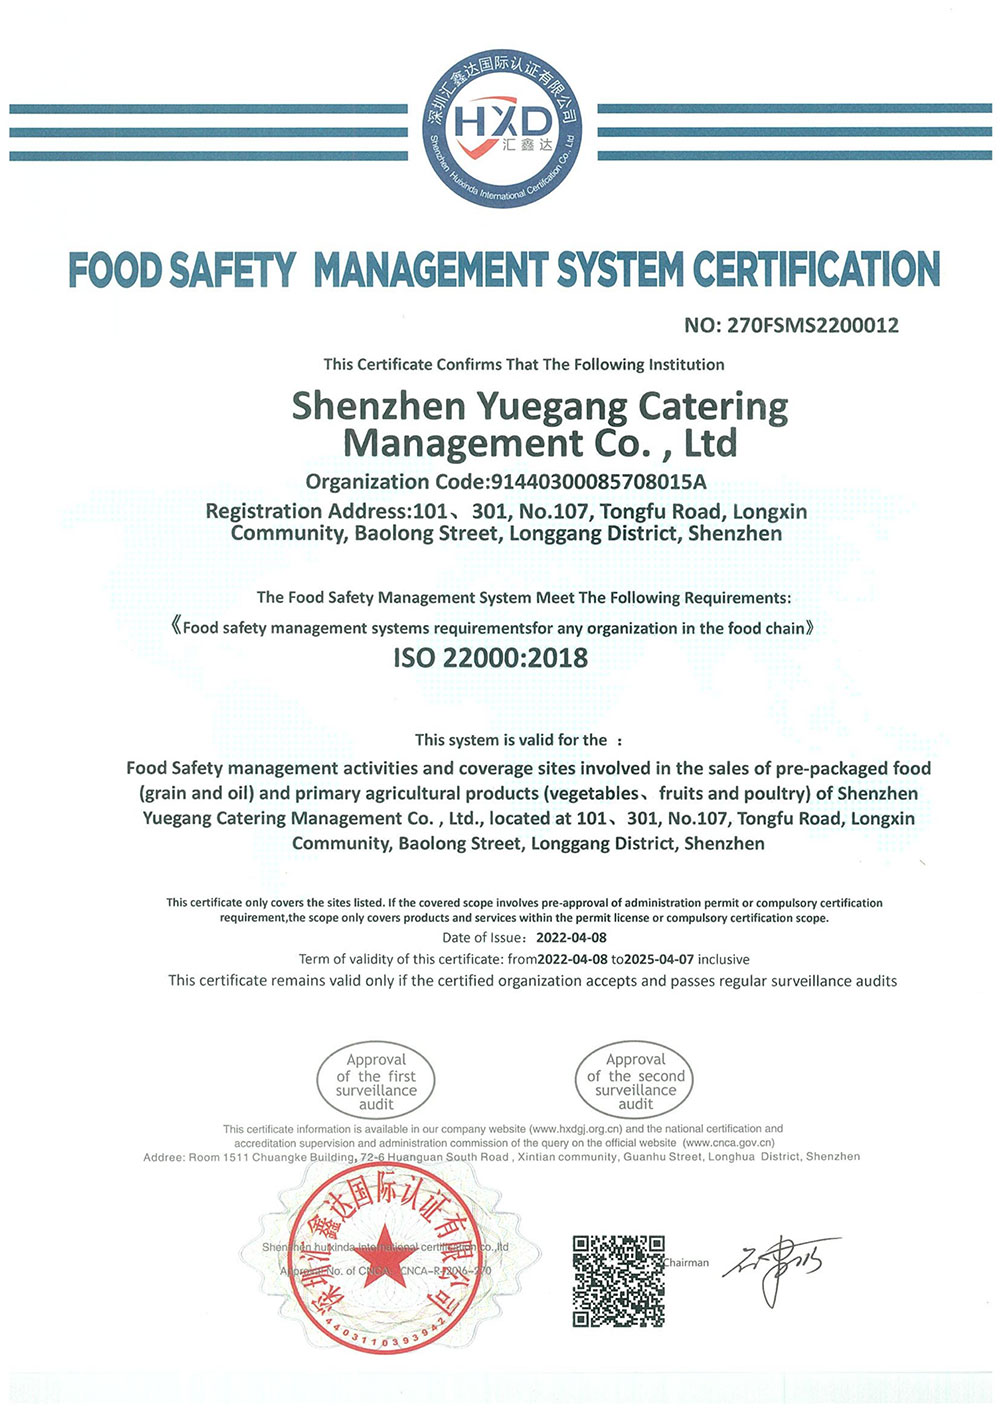 食品安全管理体系认证证书2品牌荣誉粤岗蔬菜配送